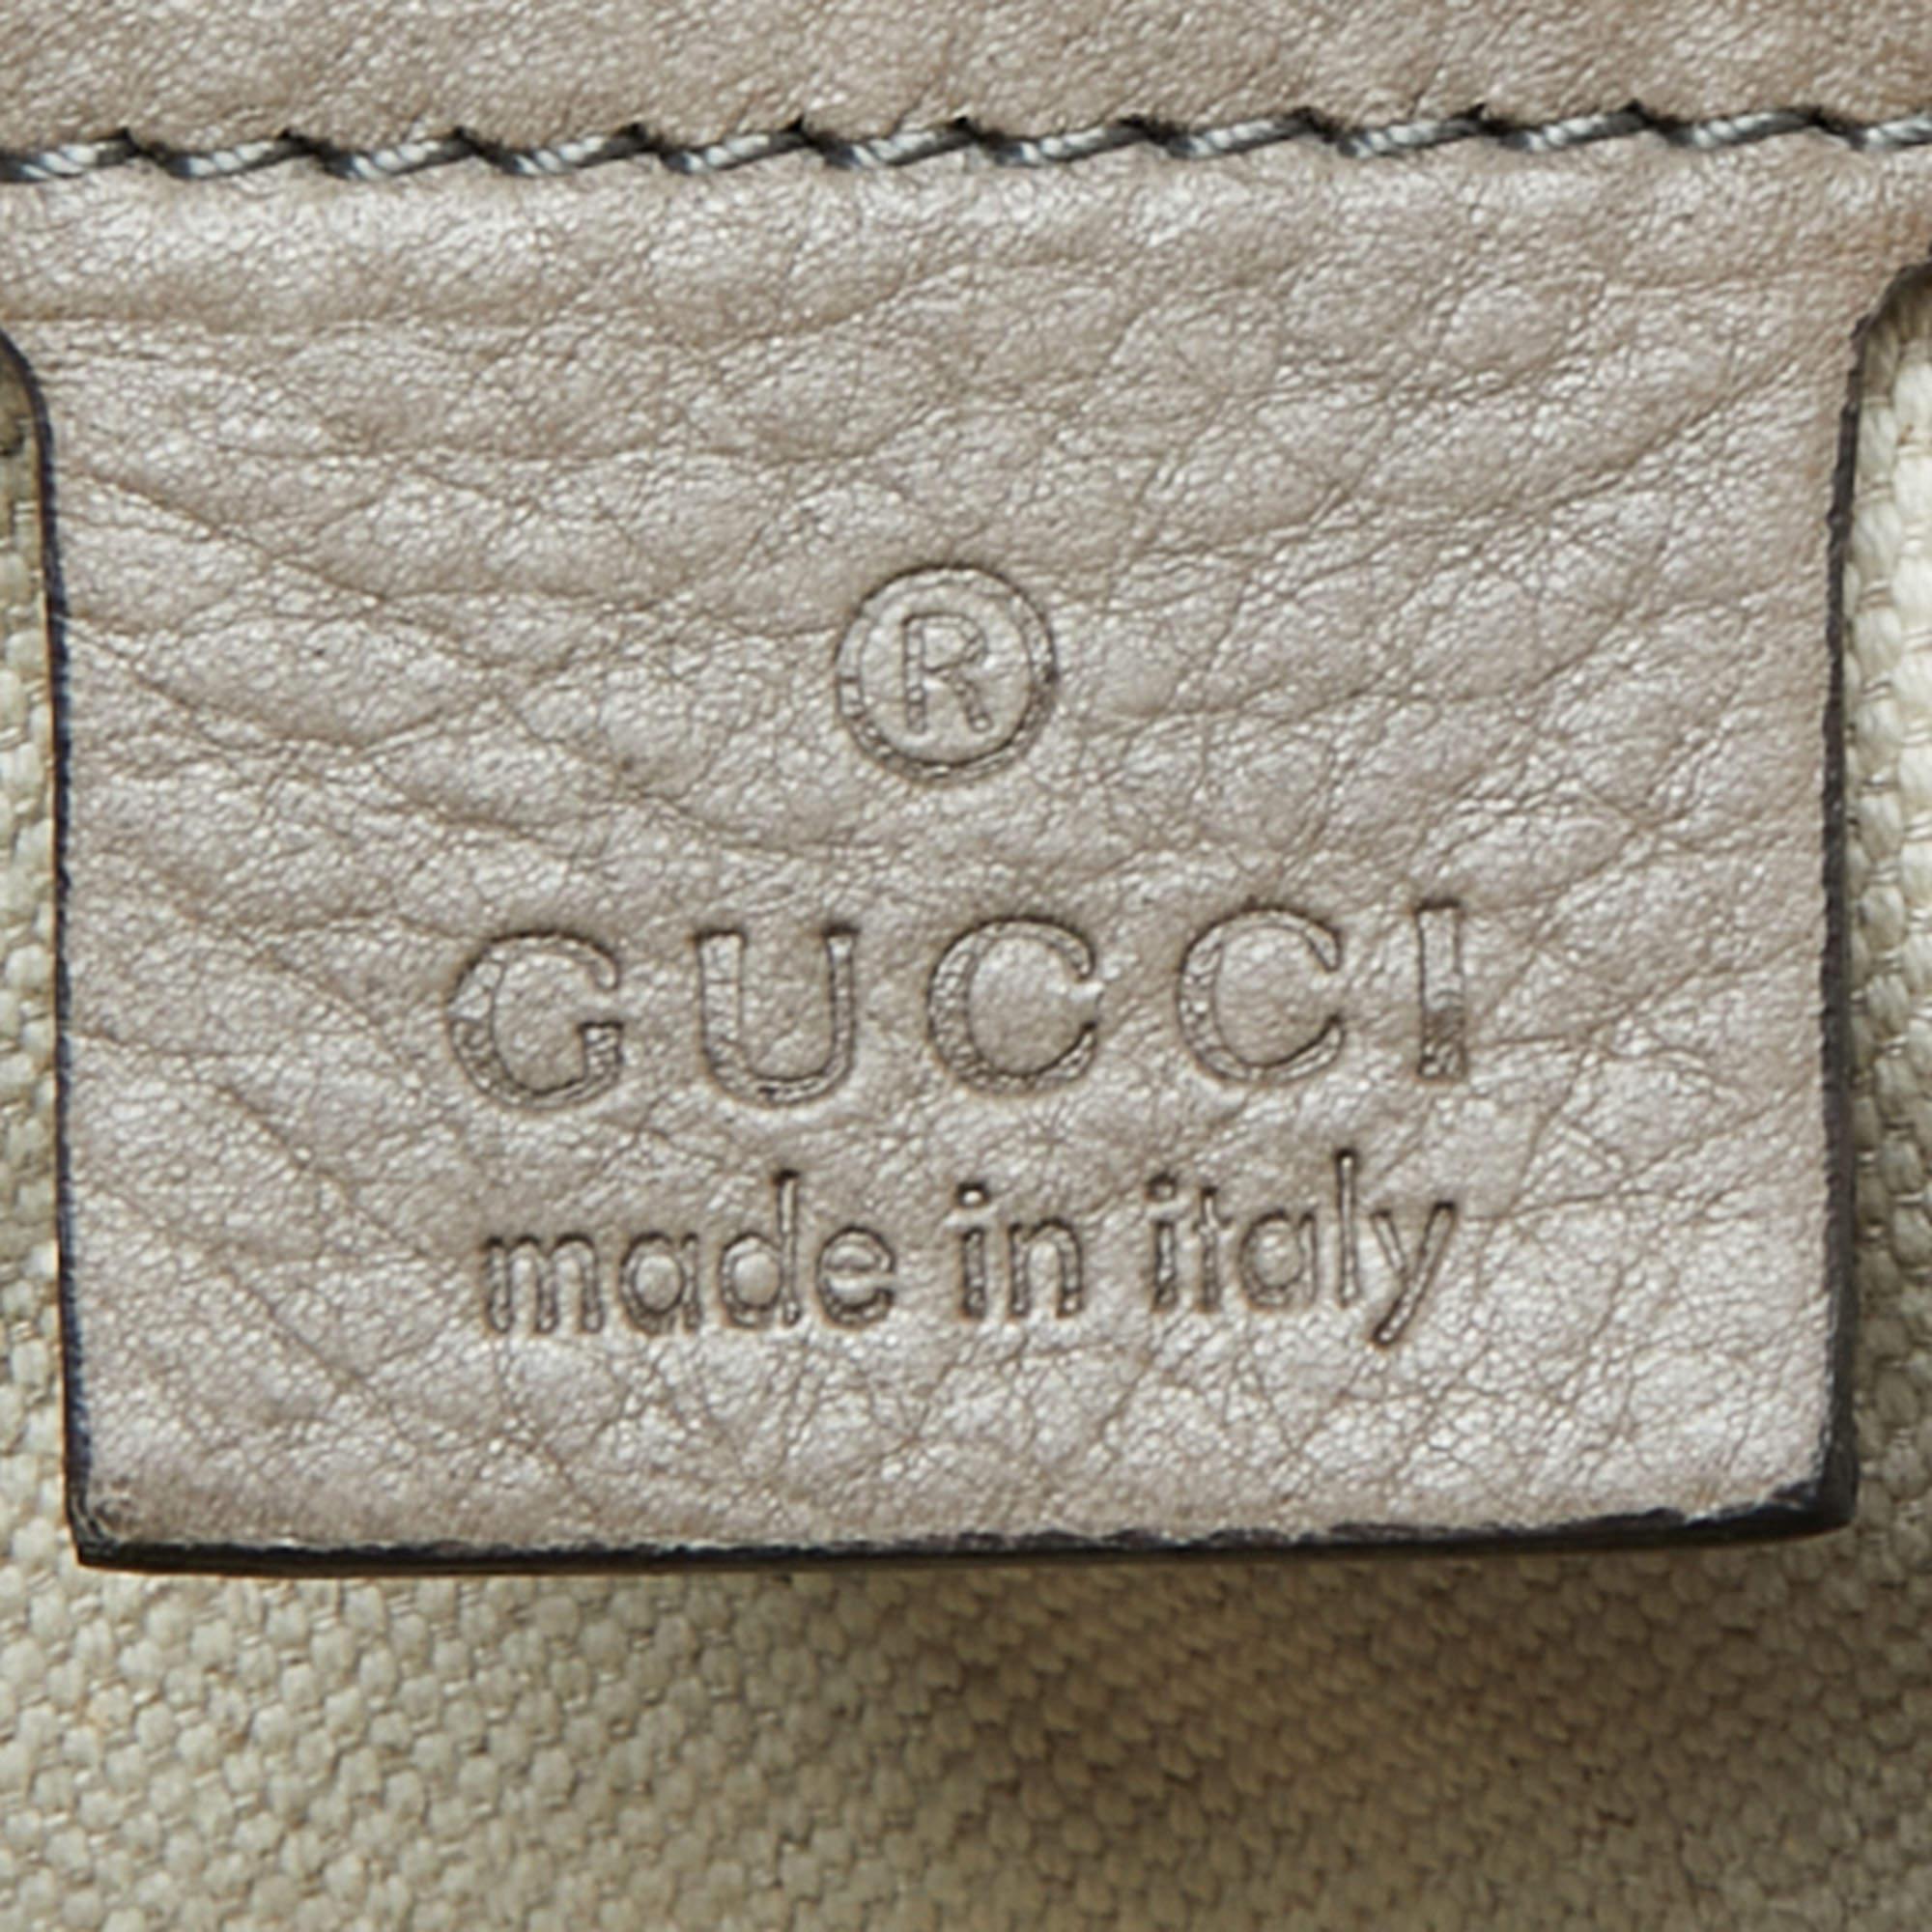 Gucci Moss Green Leather Smilla Tote In Fair Condition For Sale In Dubai, Al Qouz 2